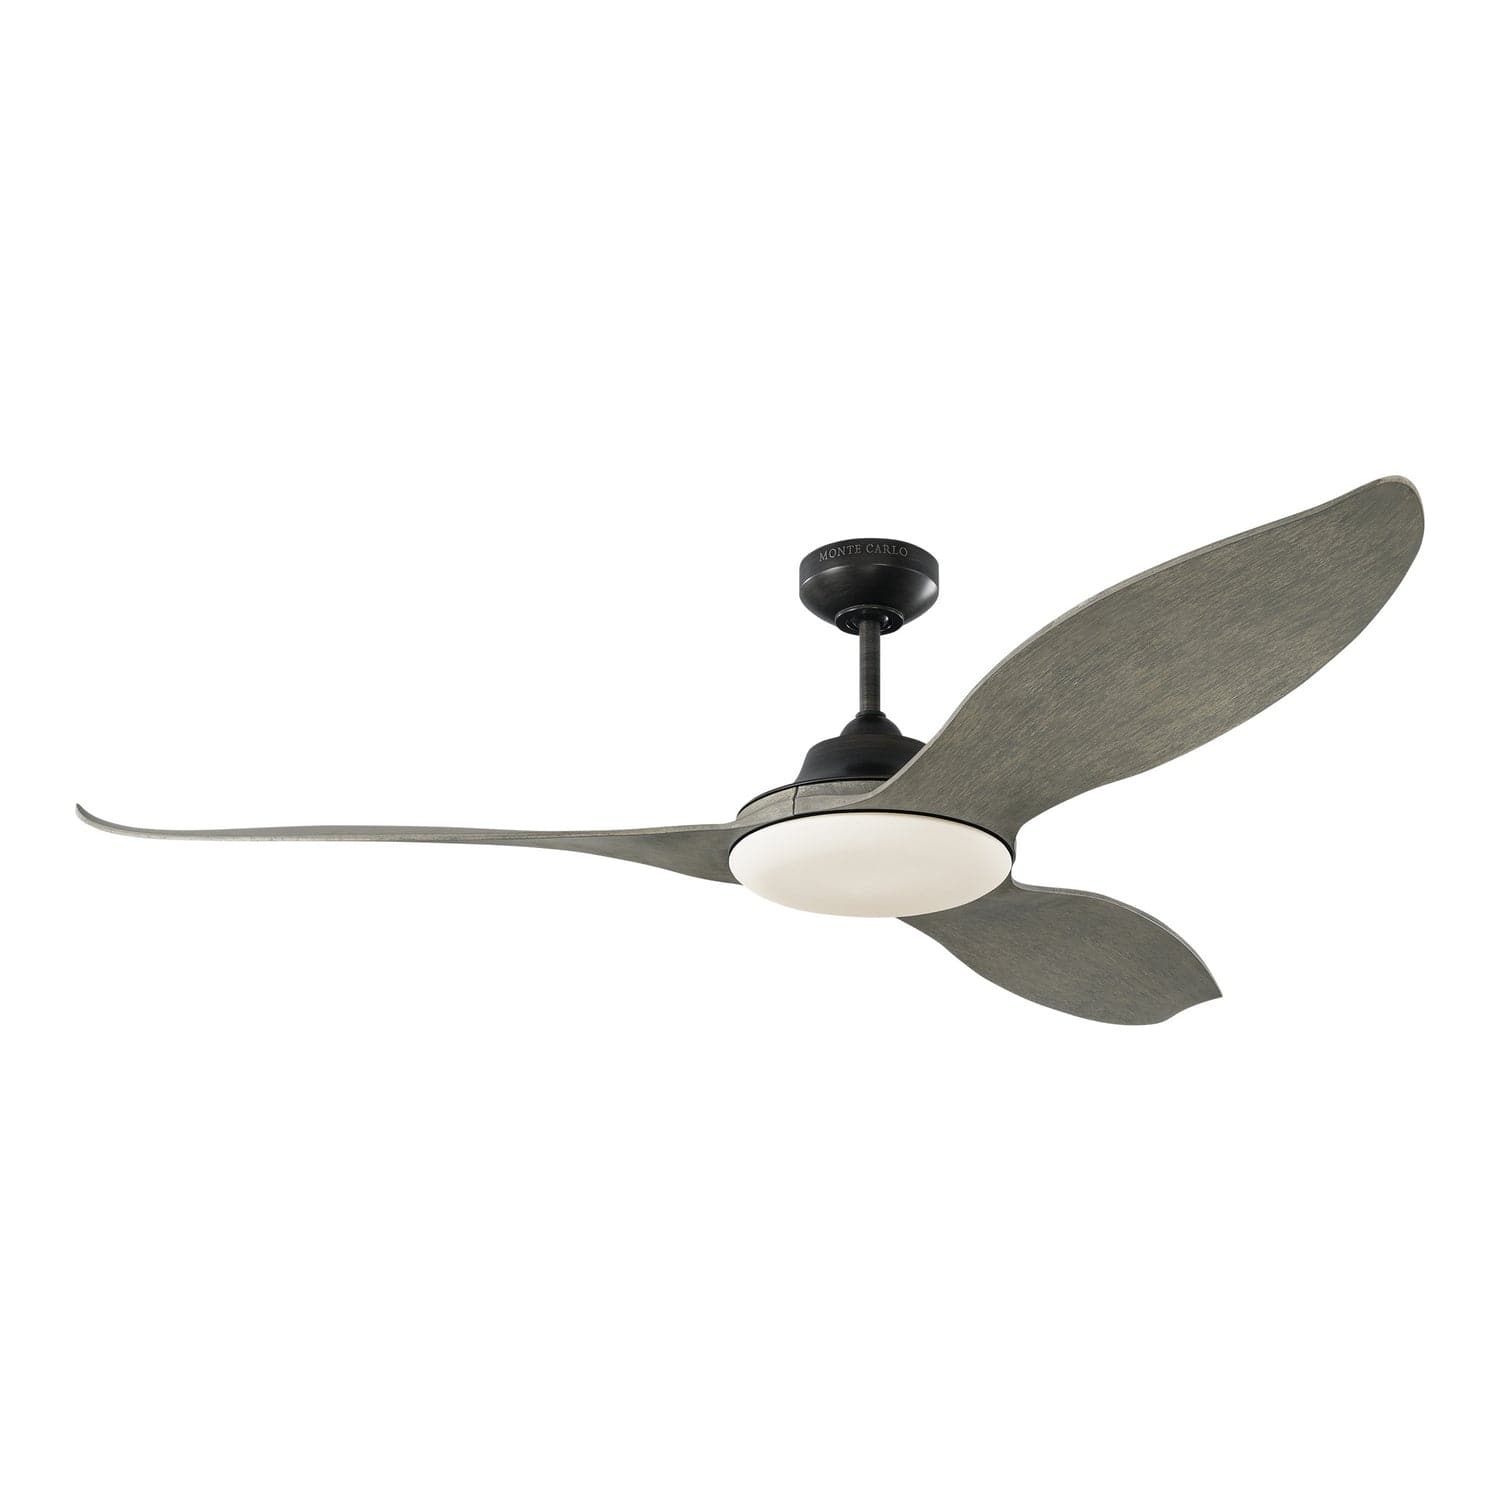 Visual Comfort Fan - 3STR60AGPD - 60``Ceiling Fan - Stockton 60 - Aged Pewter